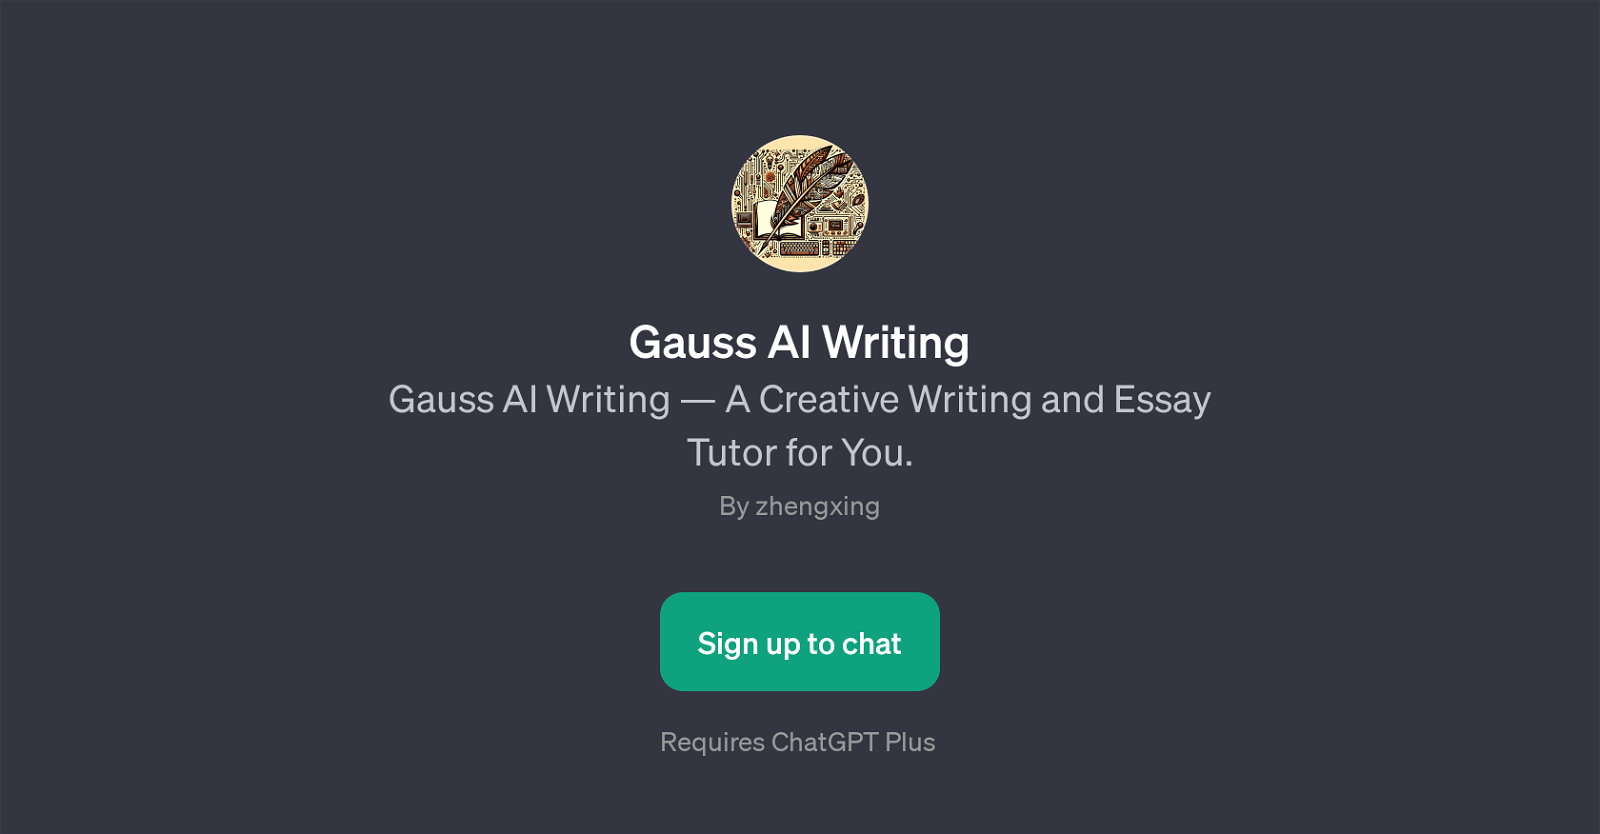 Gauss AI Writing website